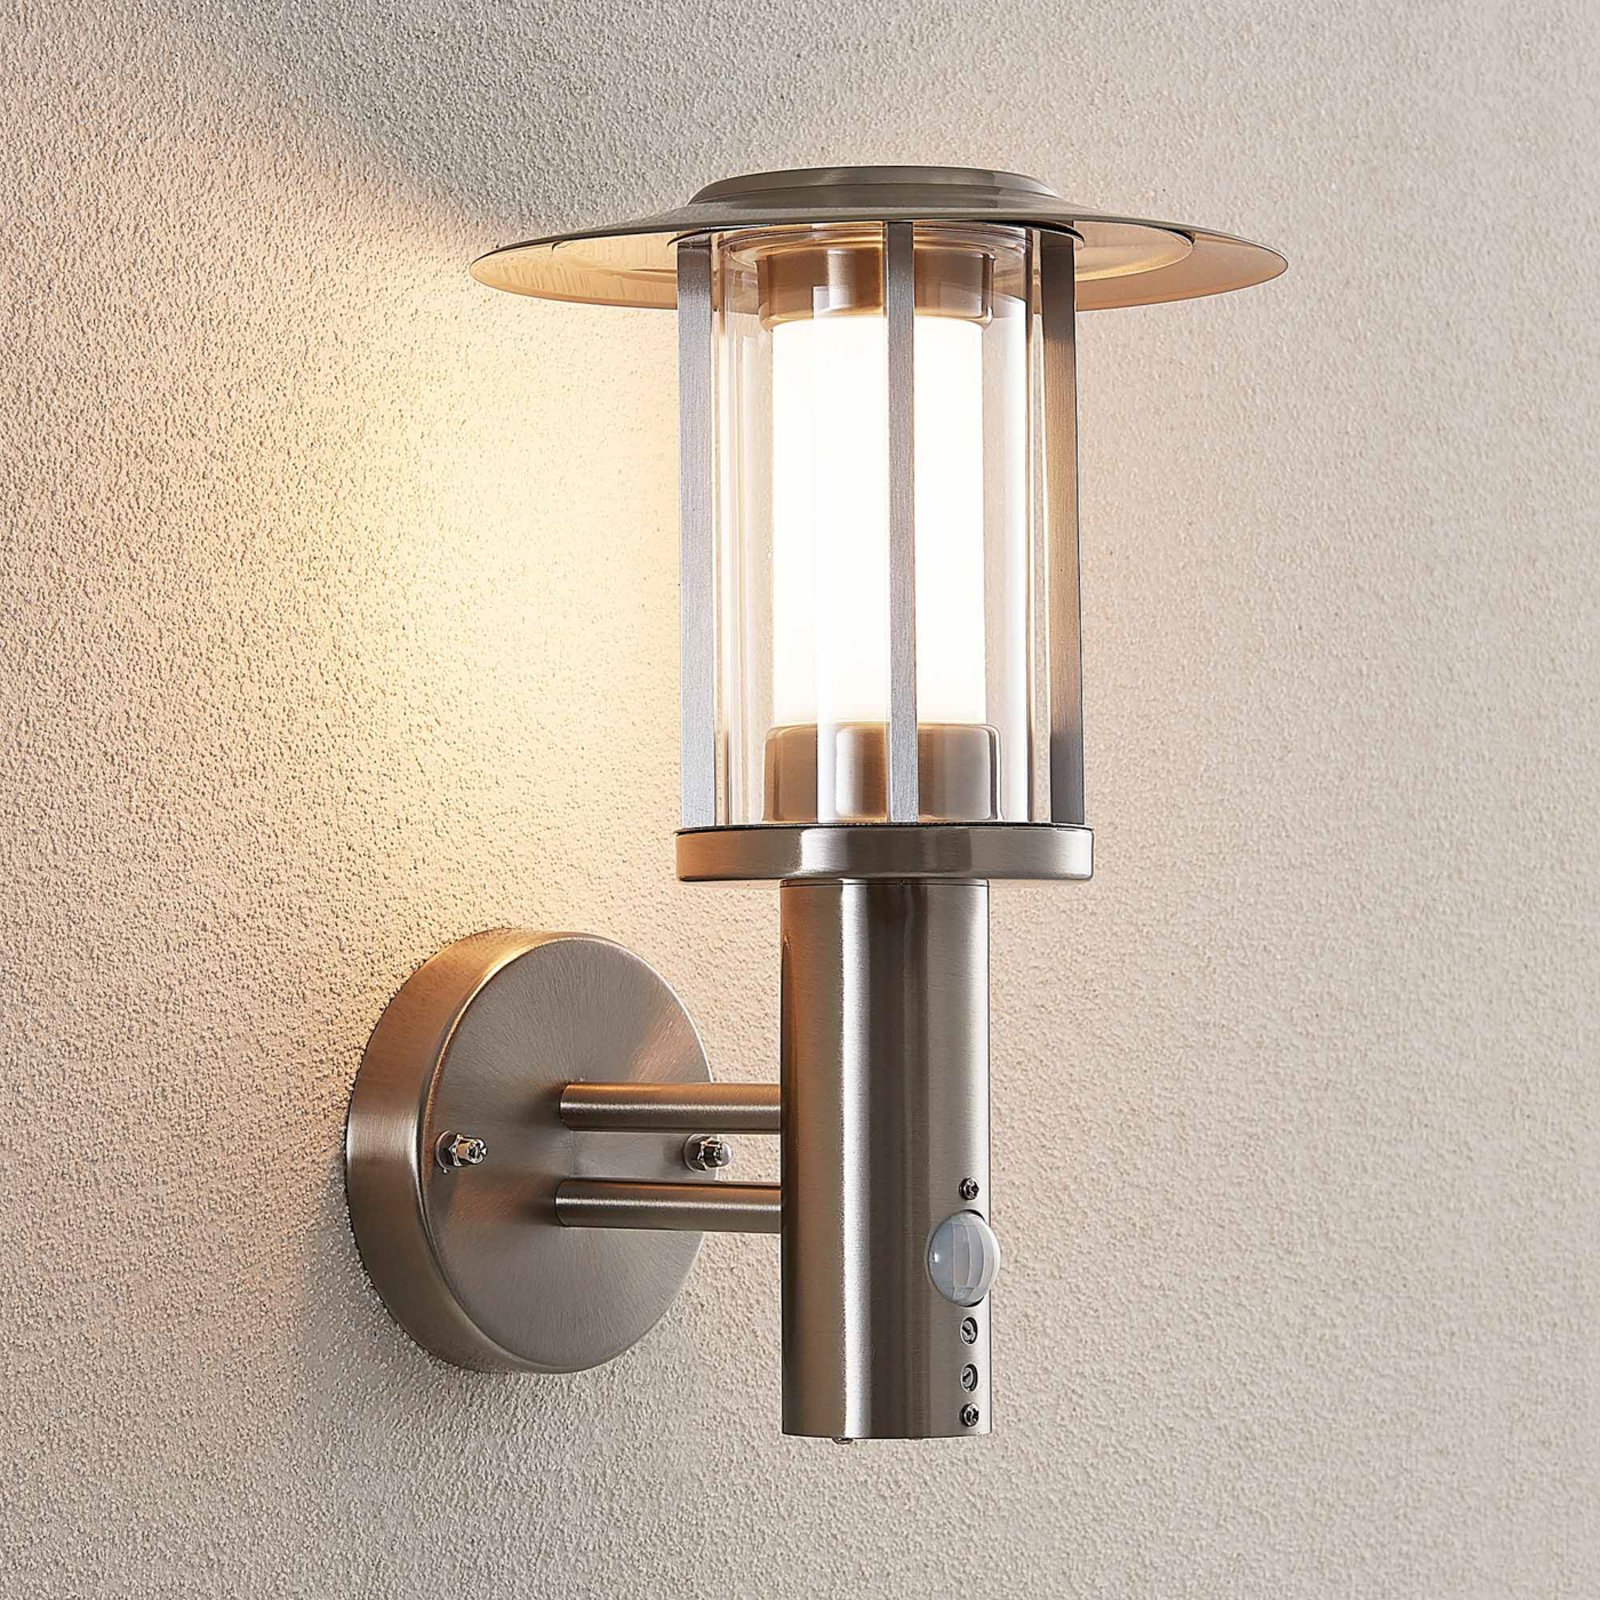 LED-Außenwandlampe Gregory, Edelstahl, m. Sensor